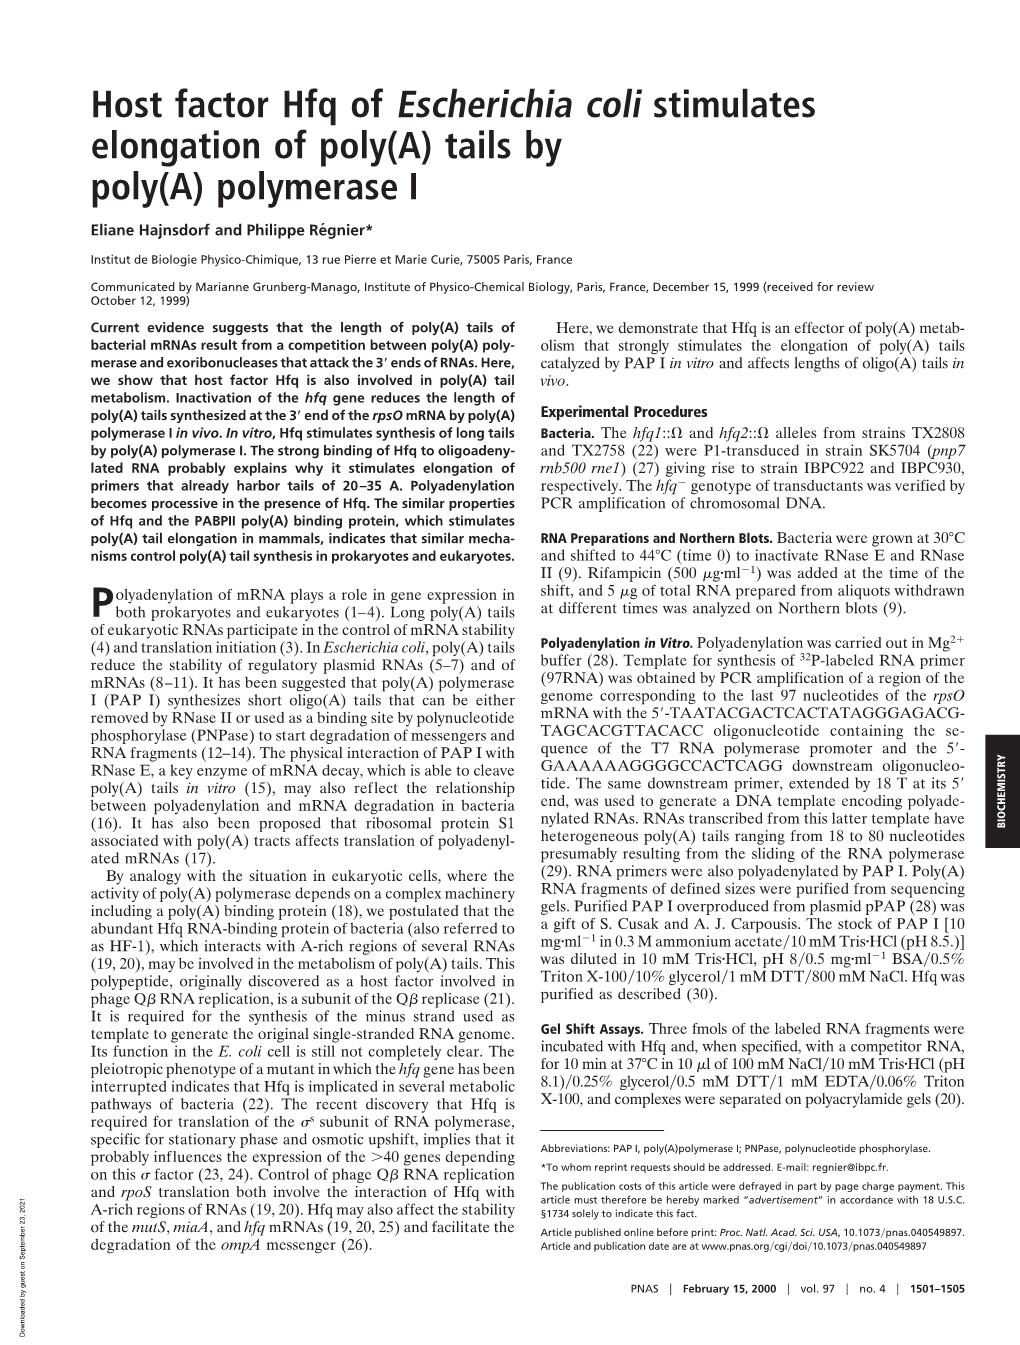 Polymerase I